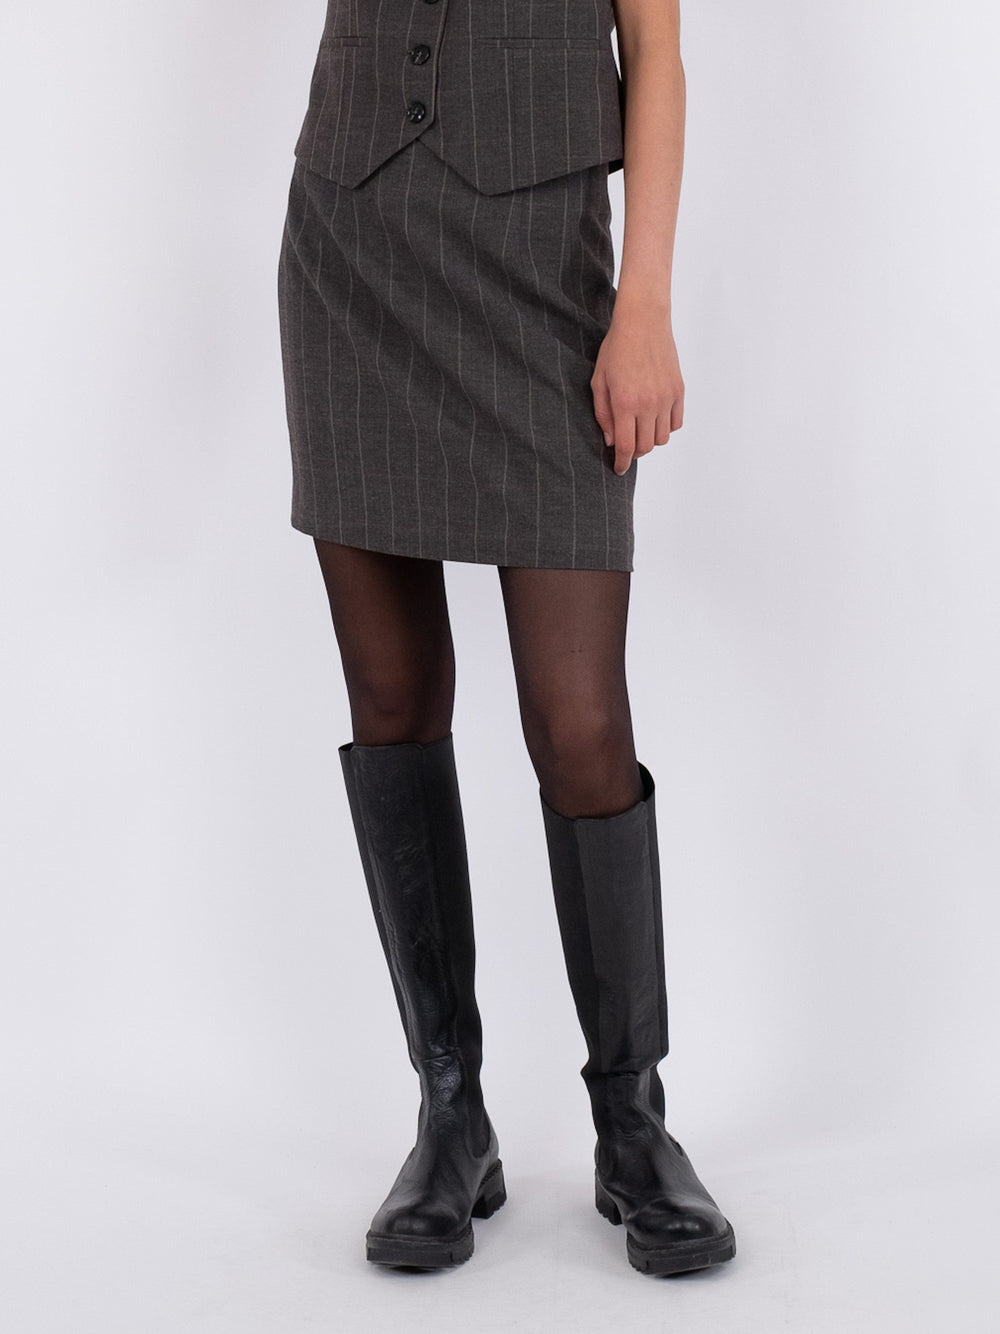 Neo Noir - Helmine Soft Check Skirt - Dark Grey